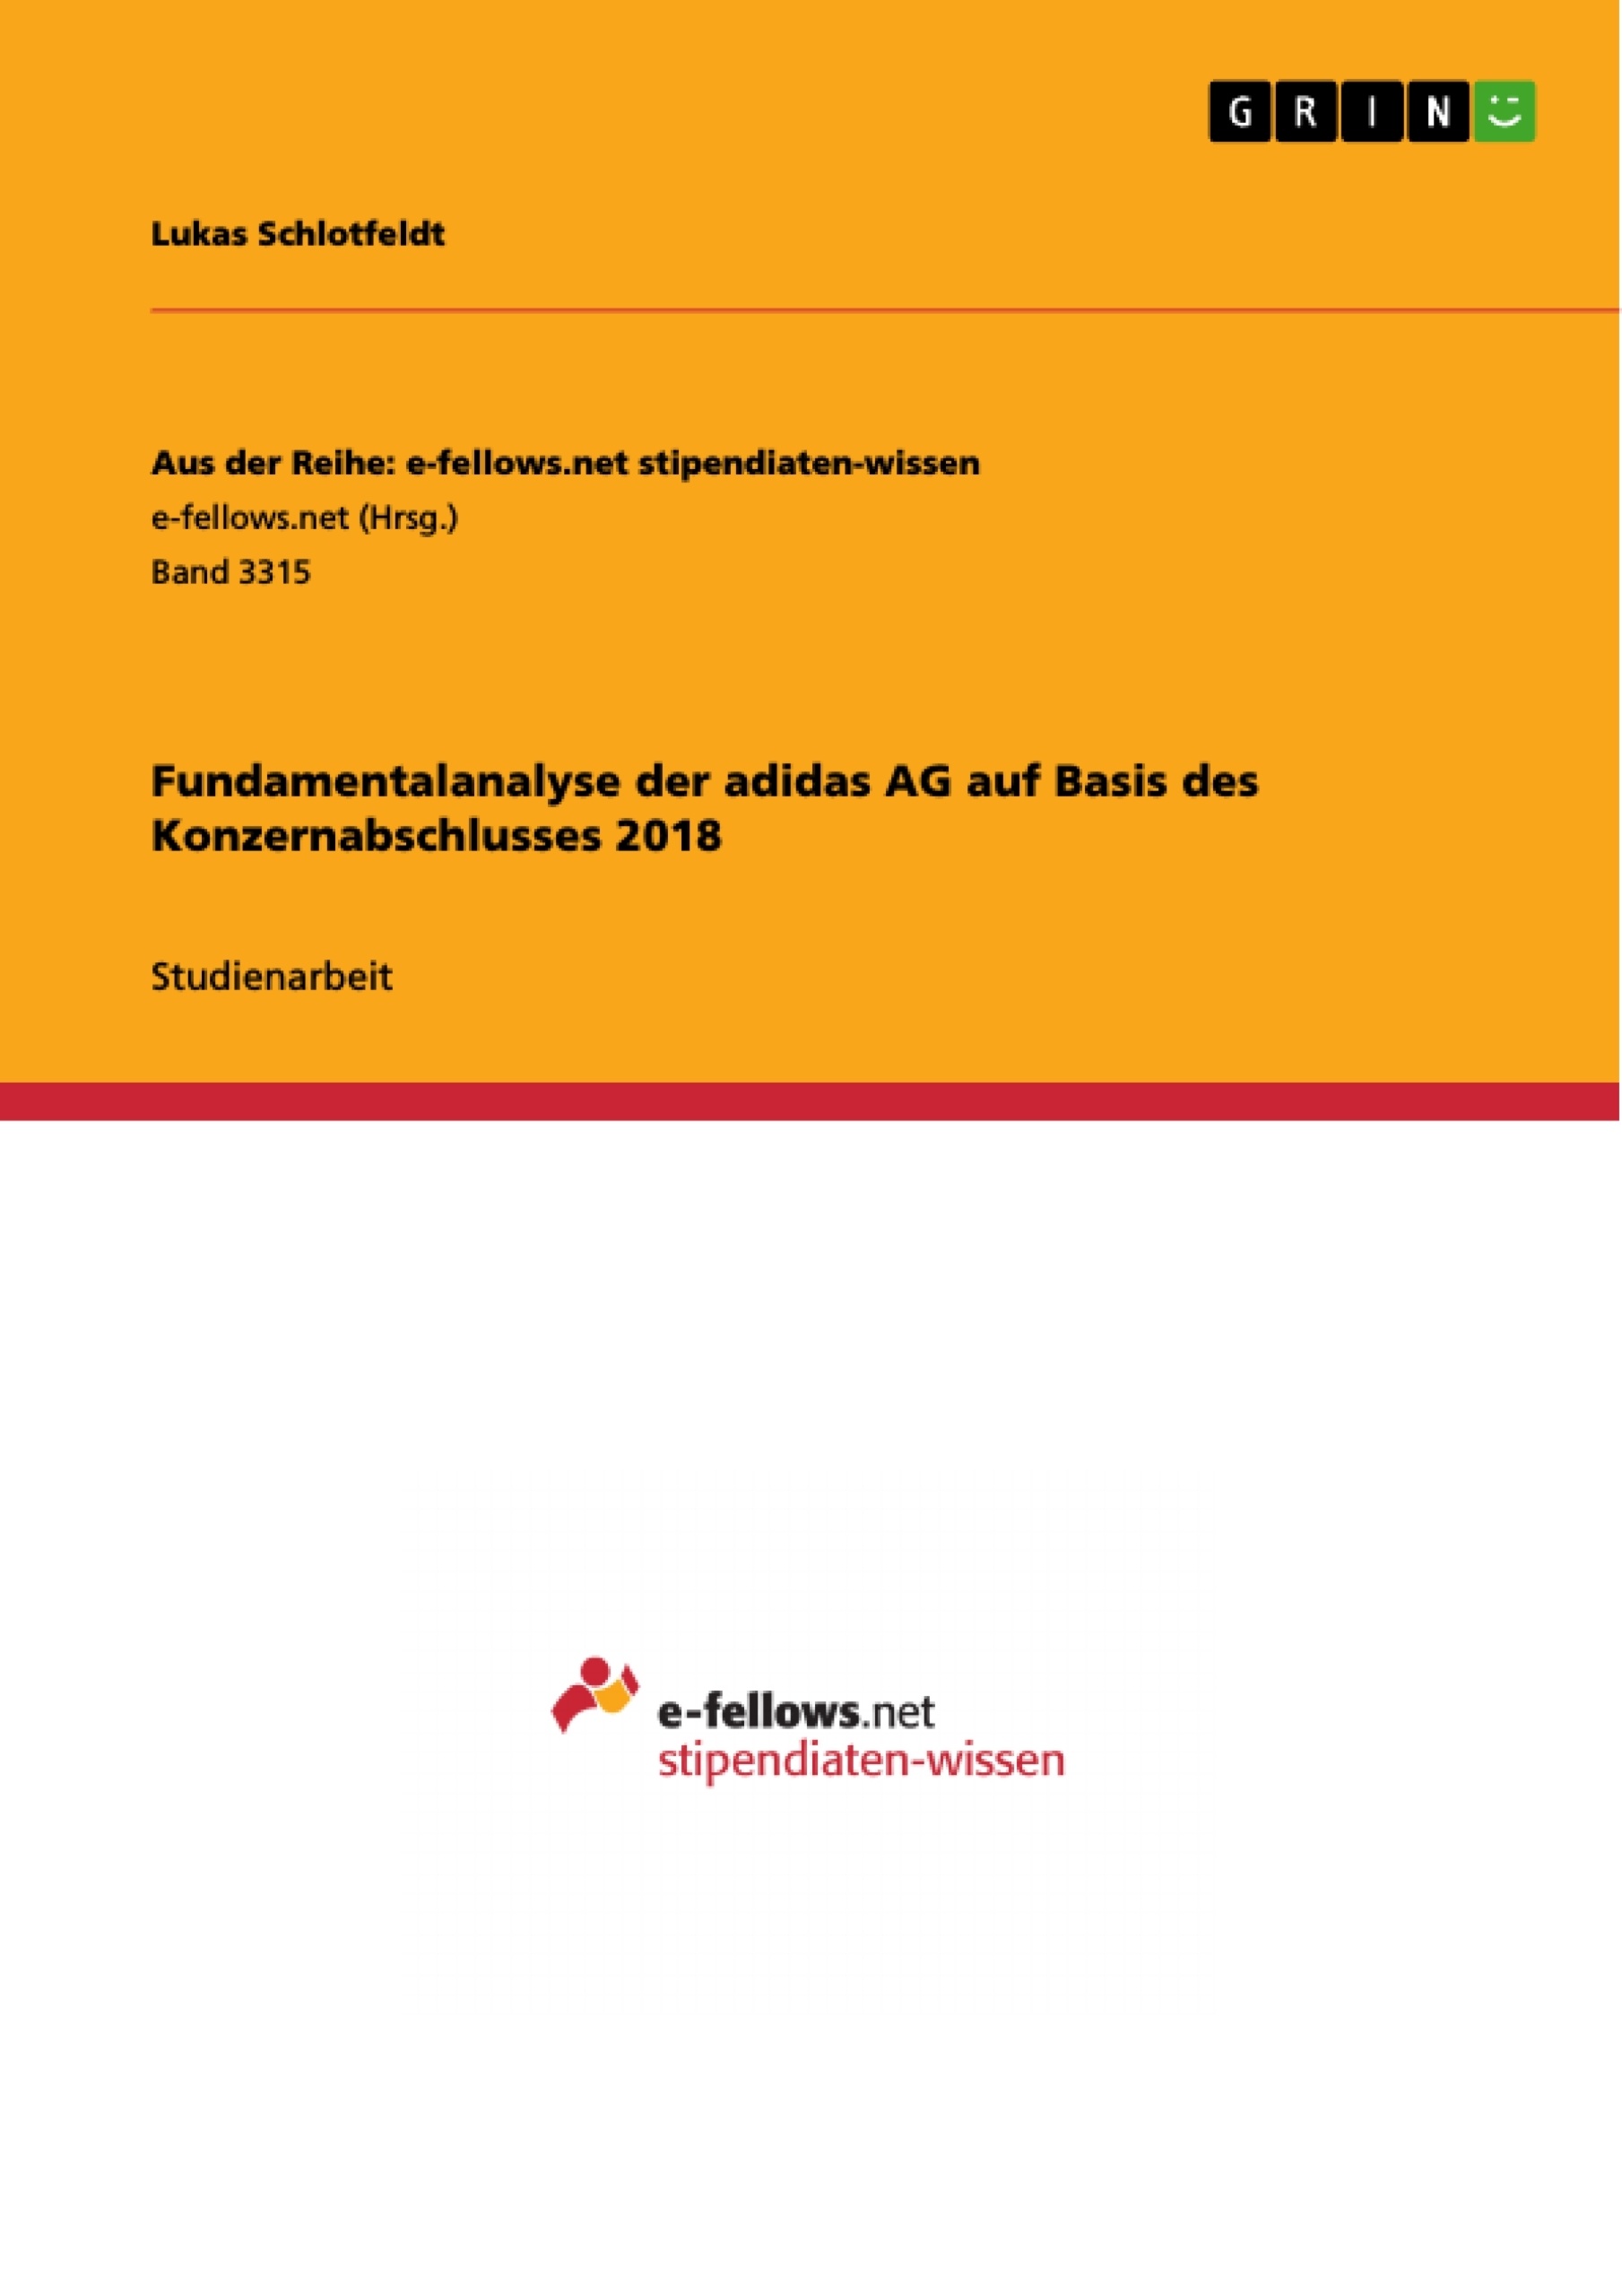 Skæbne Afsnit tang Fundamentalanalyse der adidas AG auf Basis des Konzernabschlusses 2018 -  GRIN